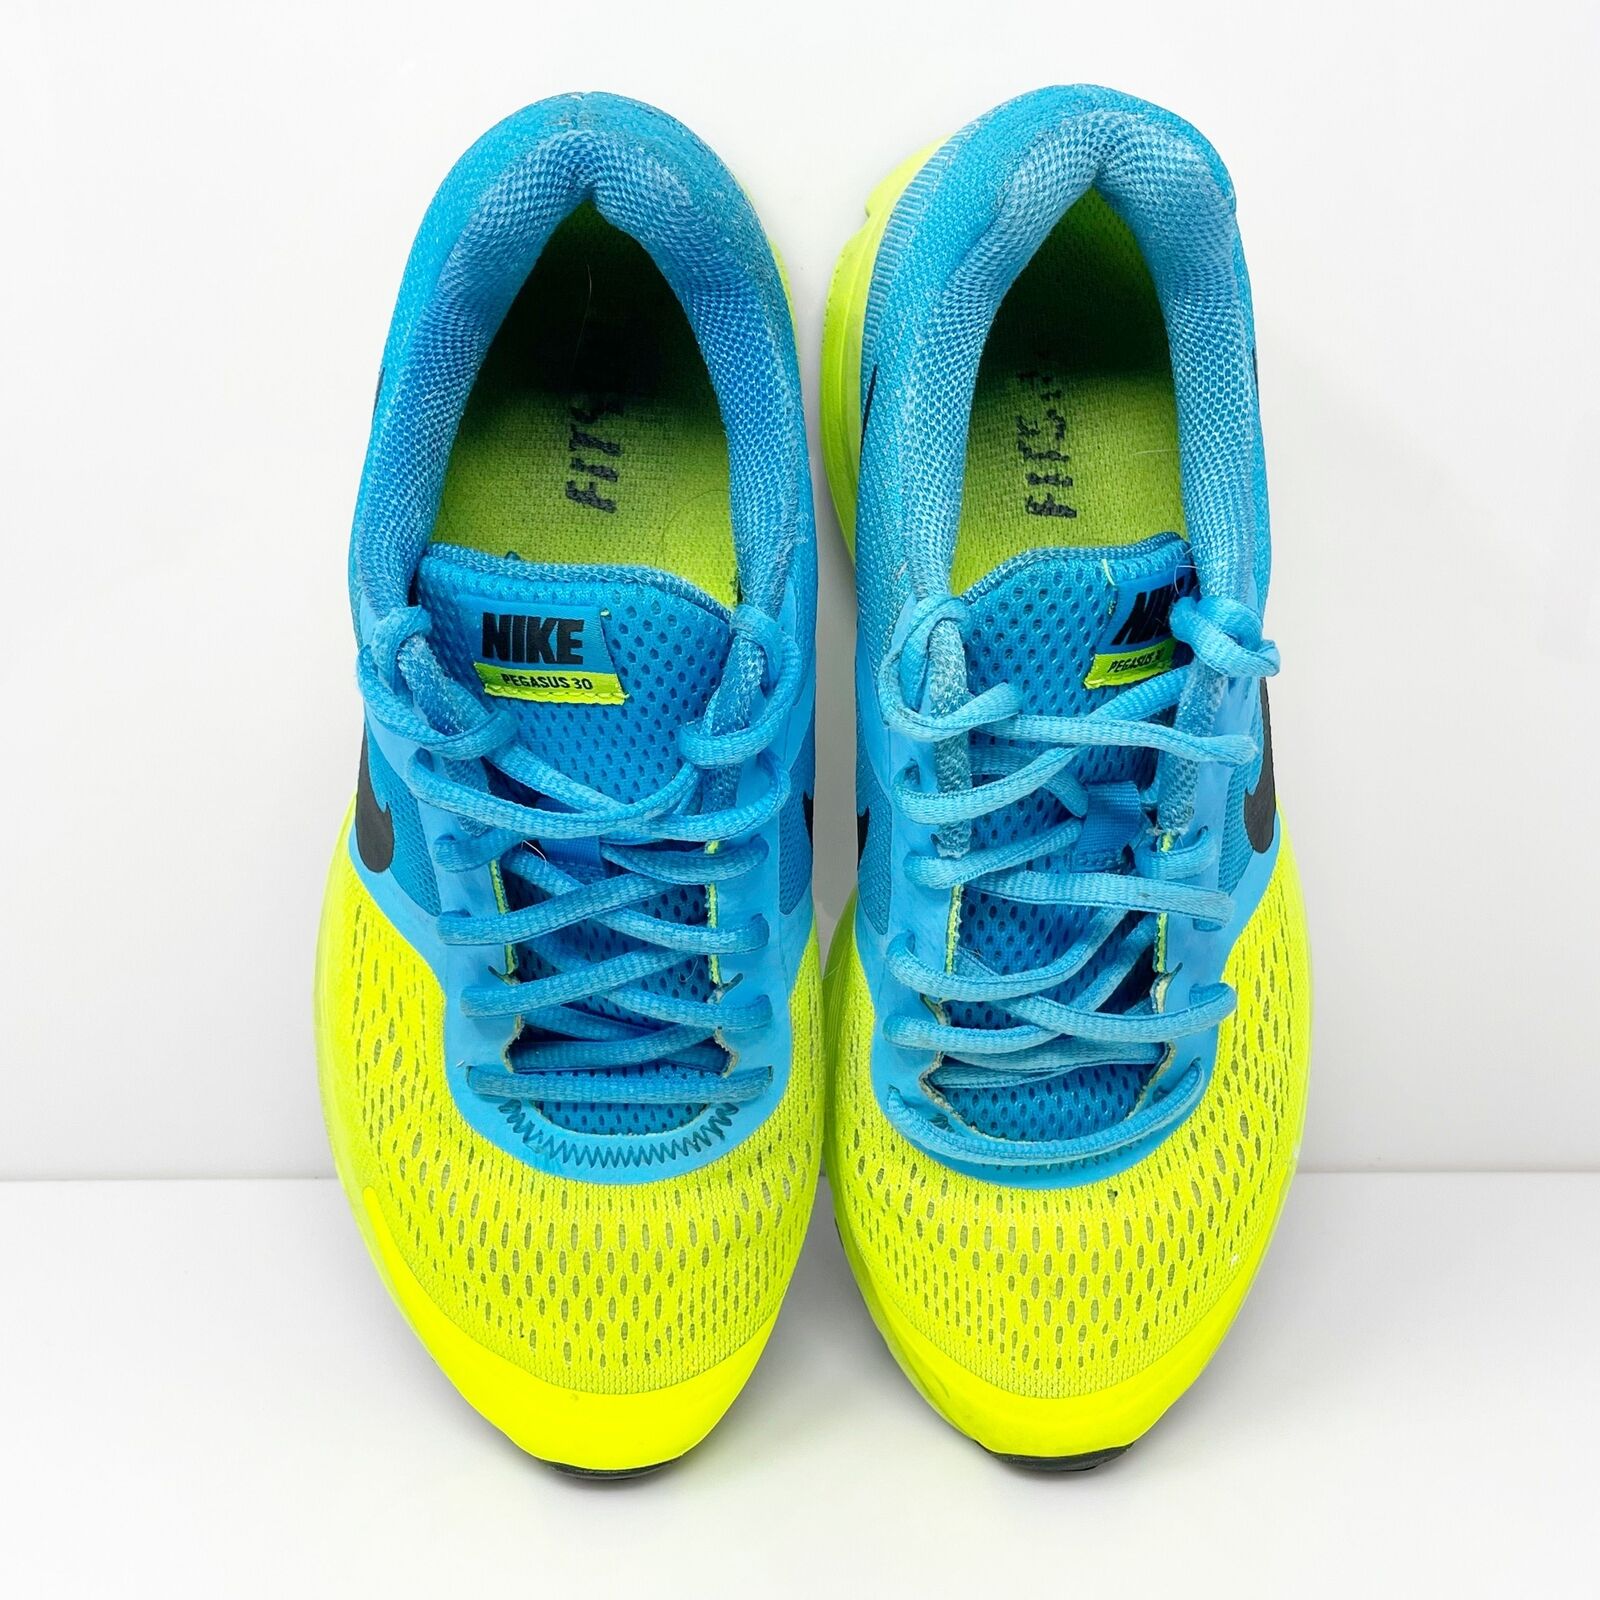 Nike Mens Air Pegasus Plus 30 599205-400 Blue Running Shoes Sneakers S ...